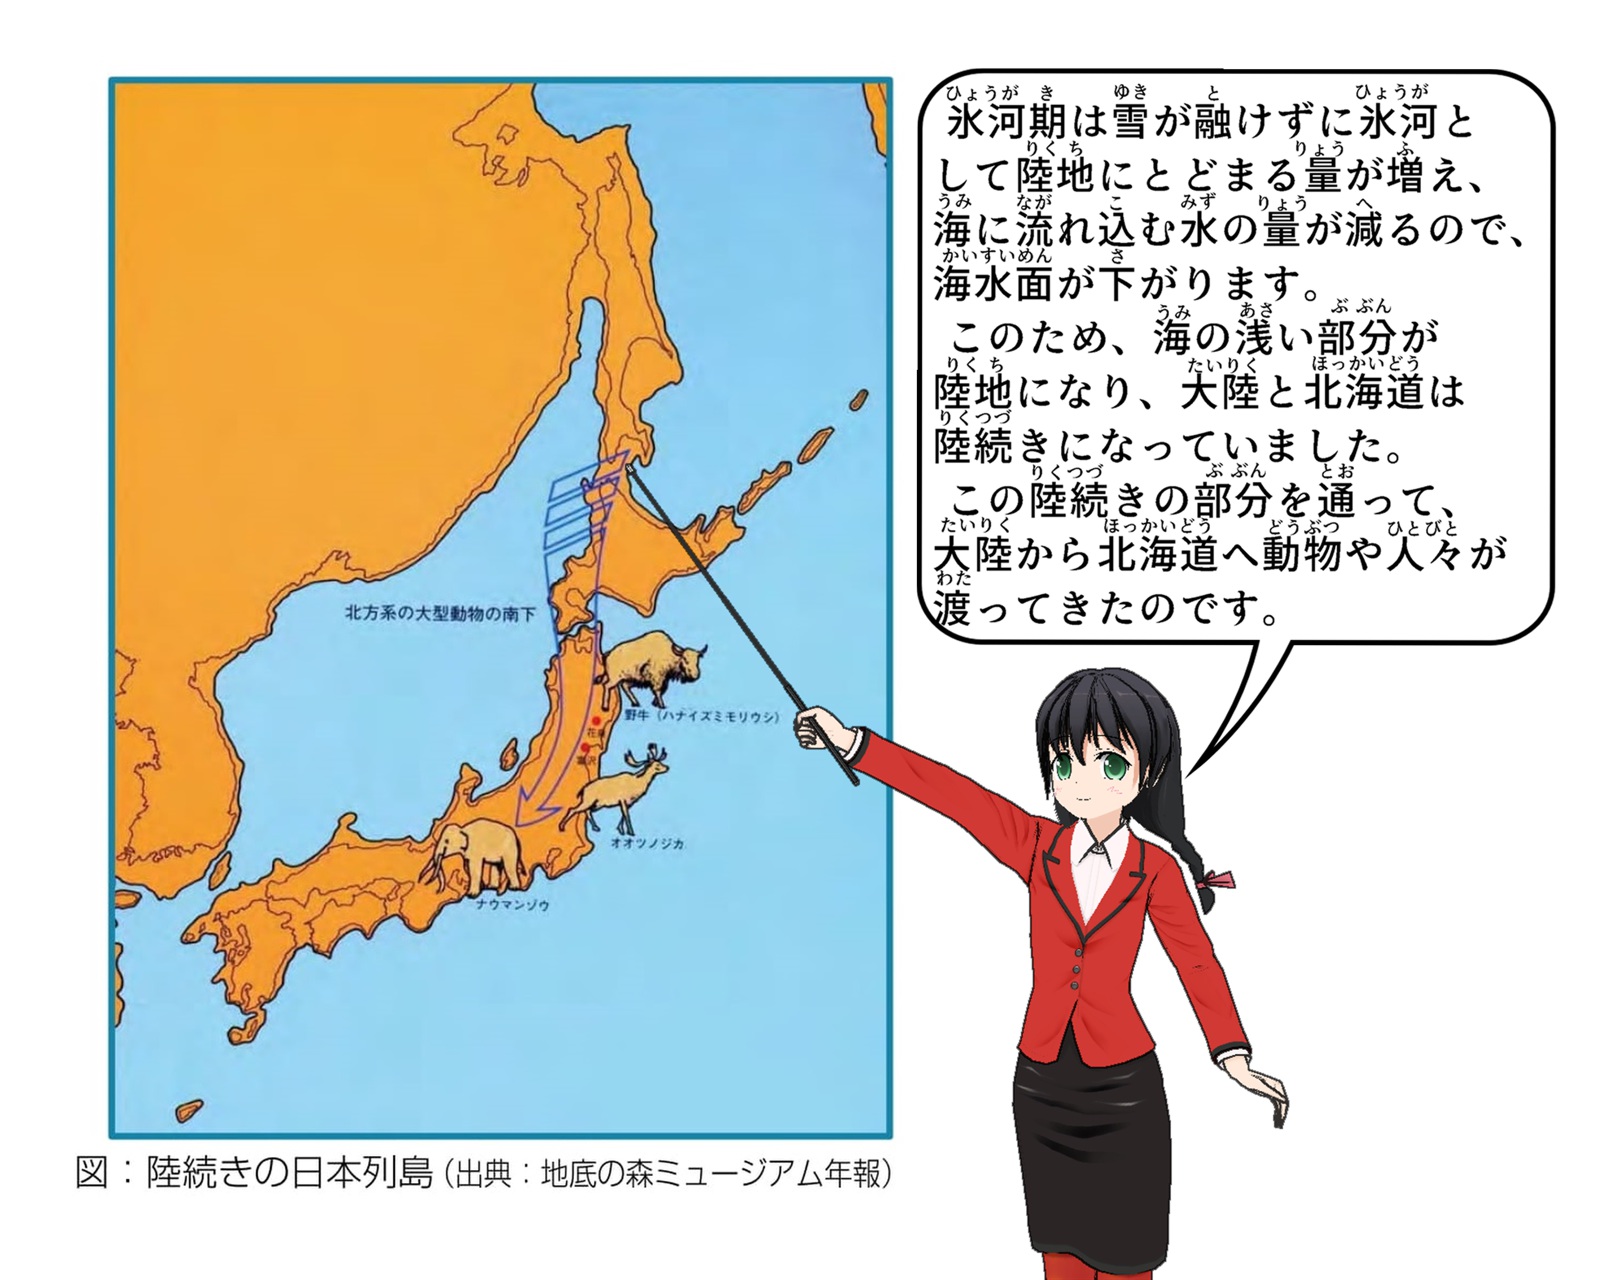 氷河期の陸続きになった日本列島の絵図について説明しているイラスト